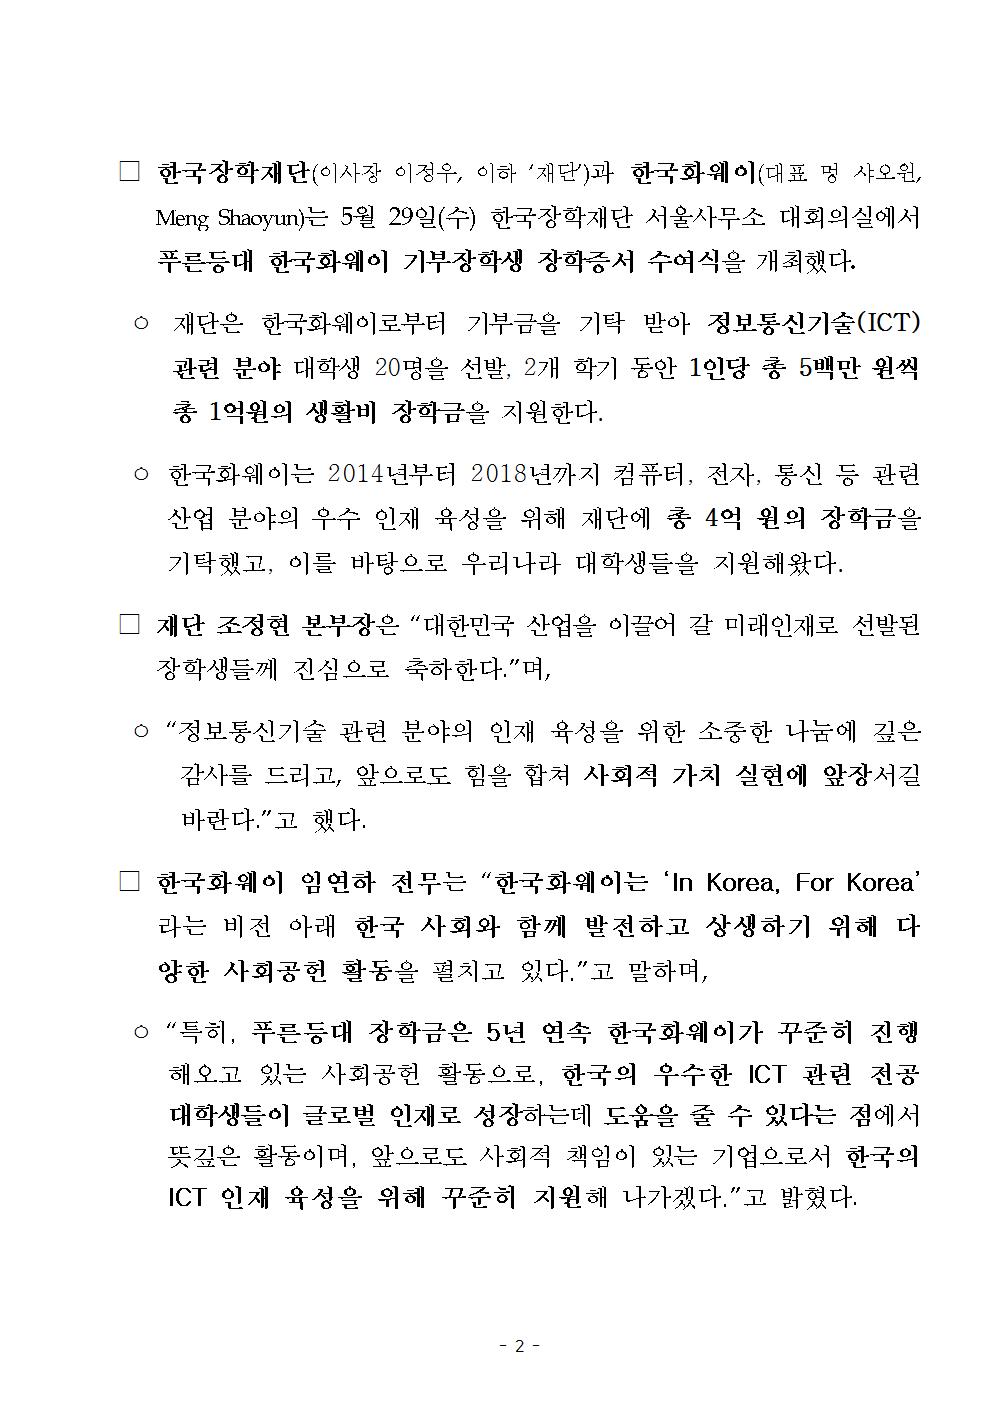 05-31(금)[보도자료] 한국장학재단 한국화웨이 장학금 장학증서 수여식002.jpg